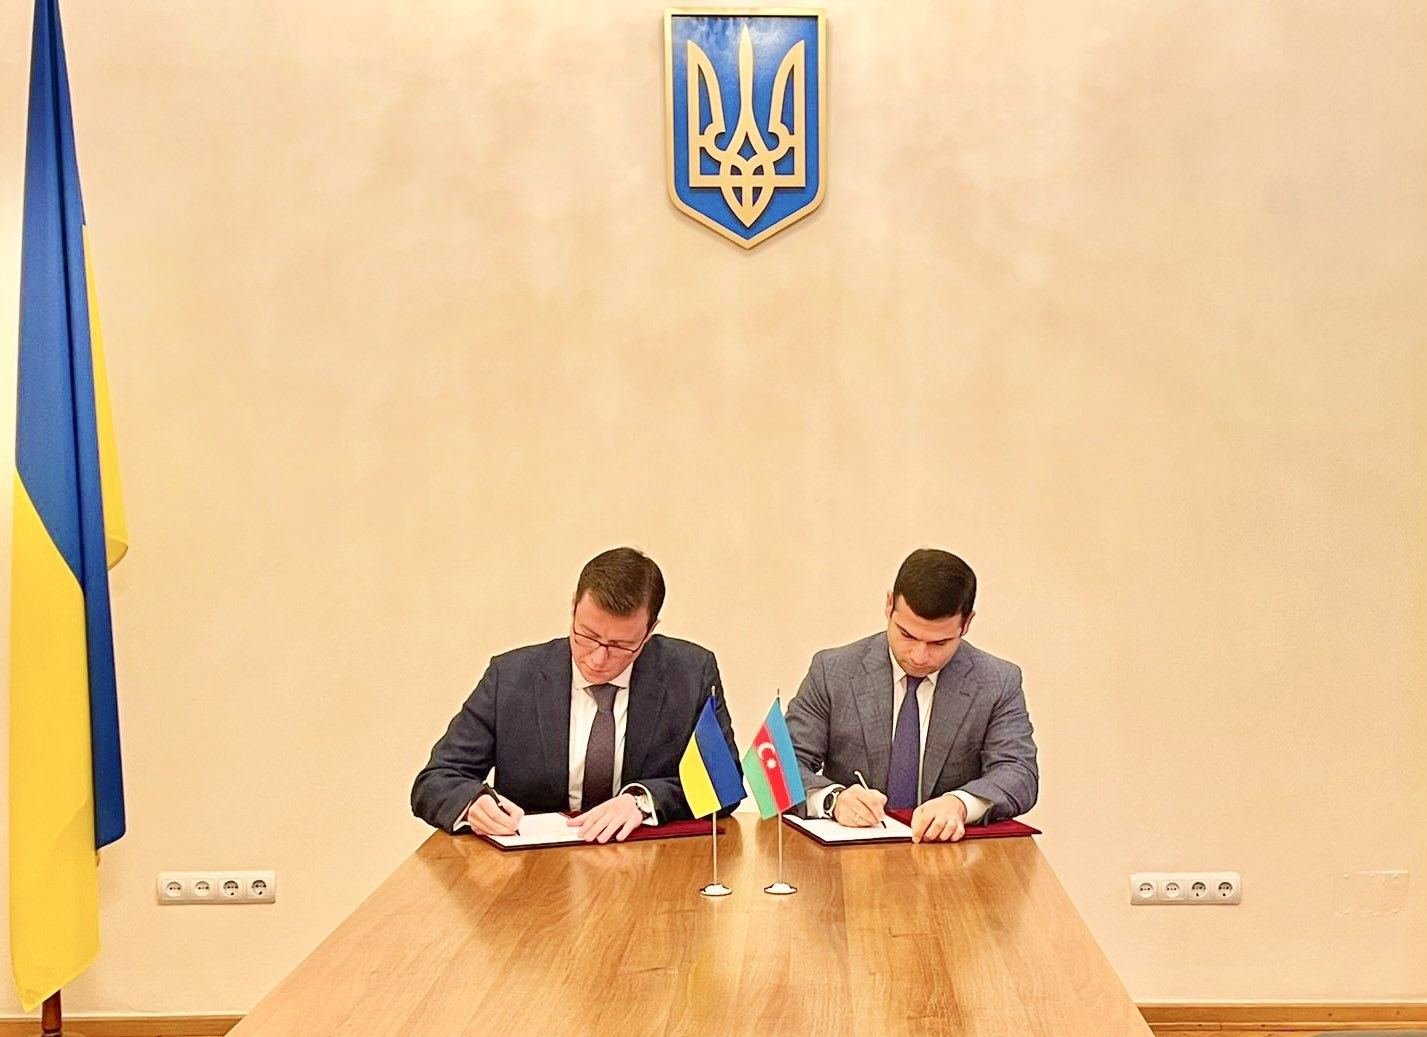 Azərbaycan və Ukrayna arasında qarşılıqlı investisiya barədə memorandum imzalanıb